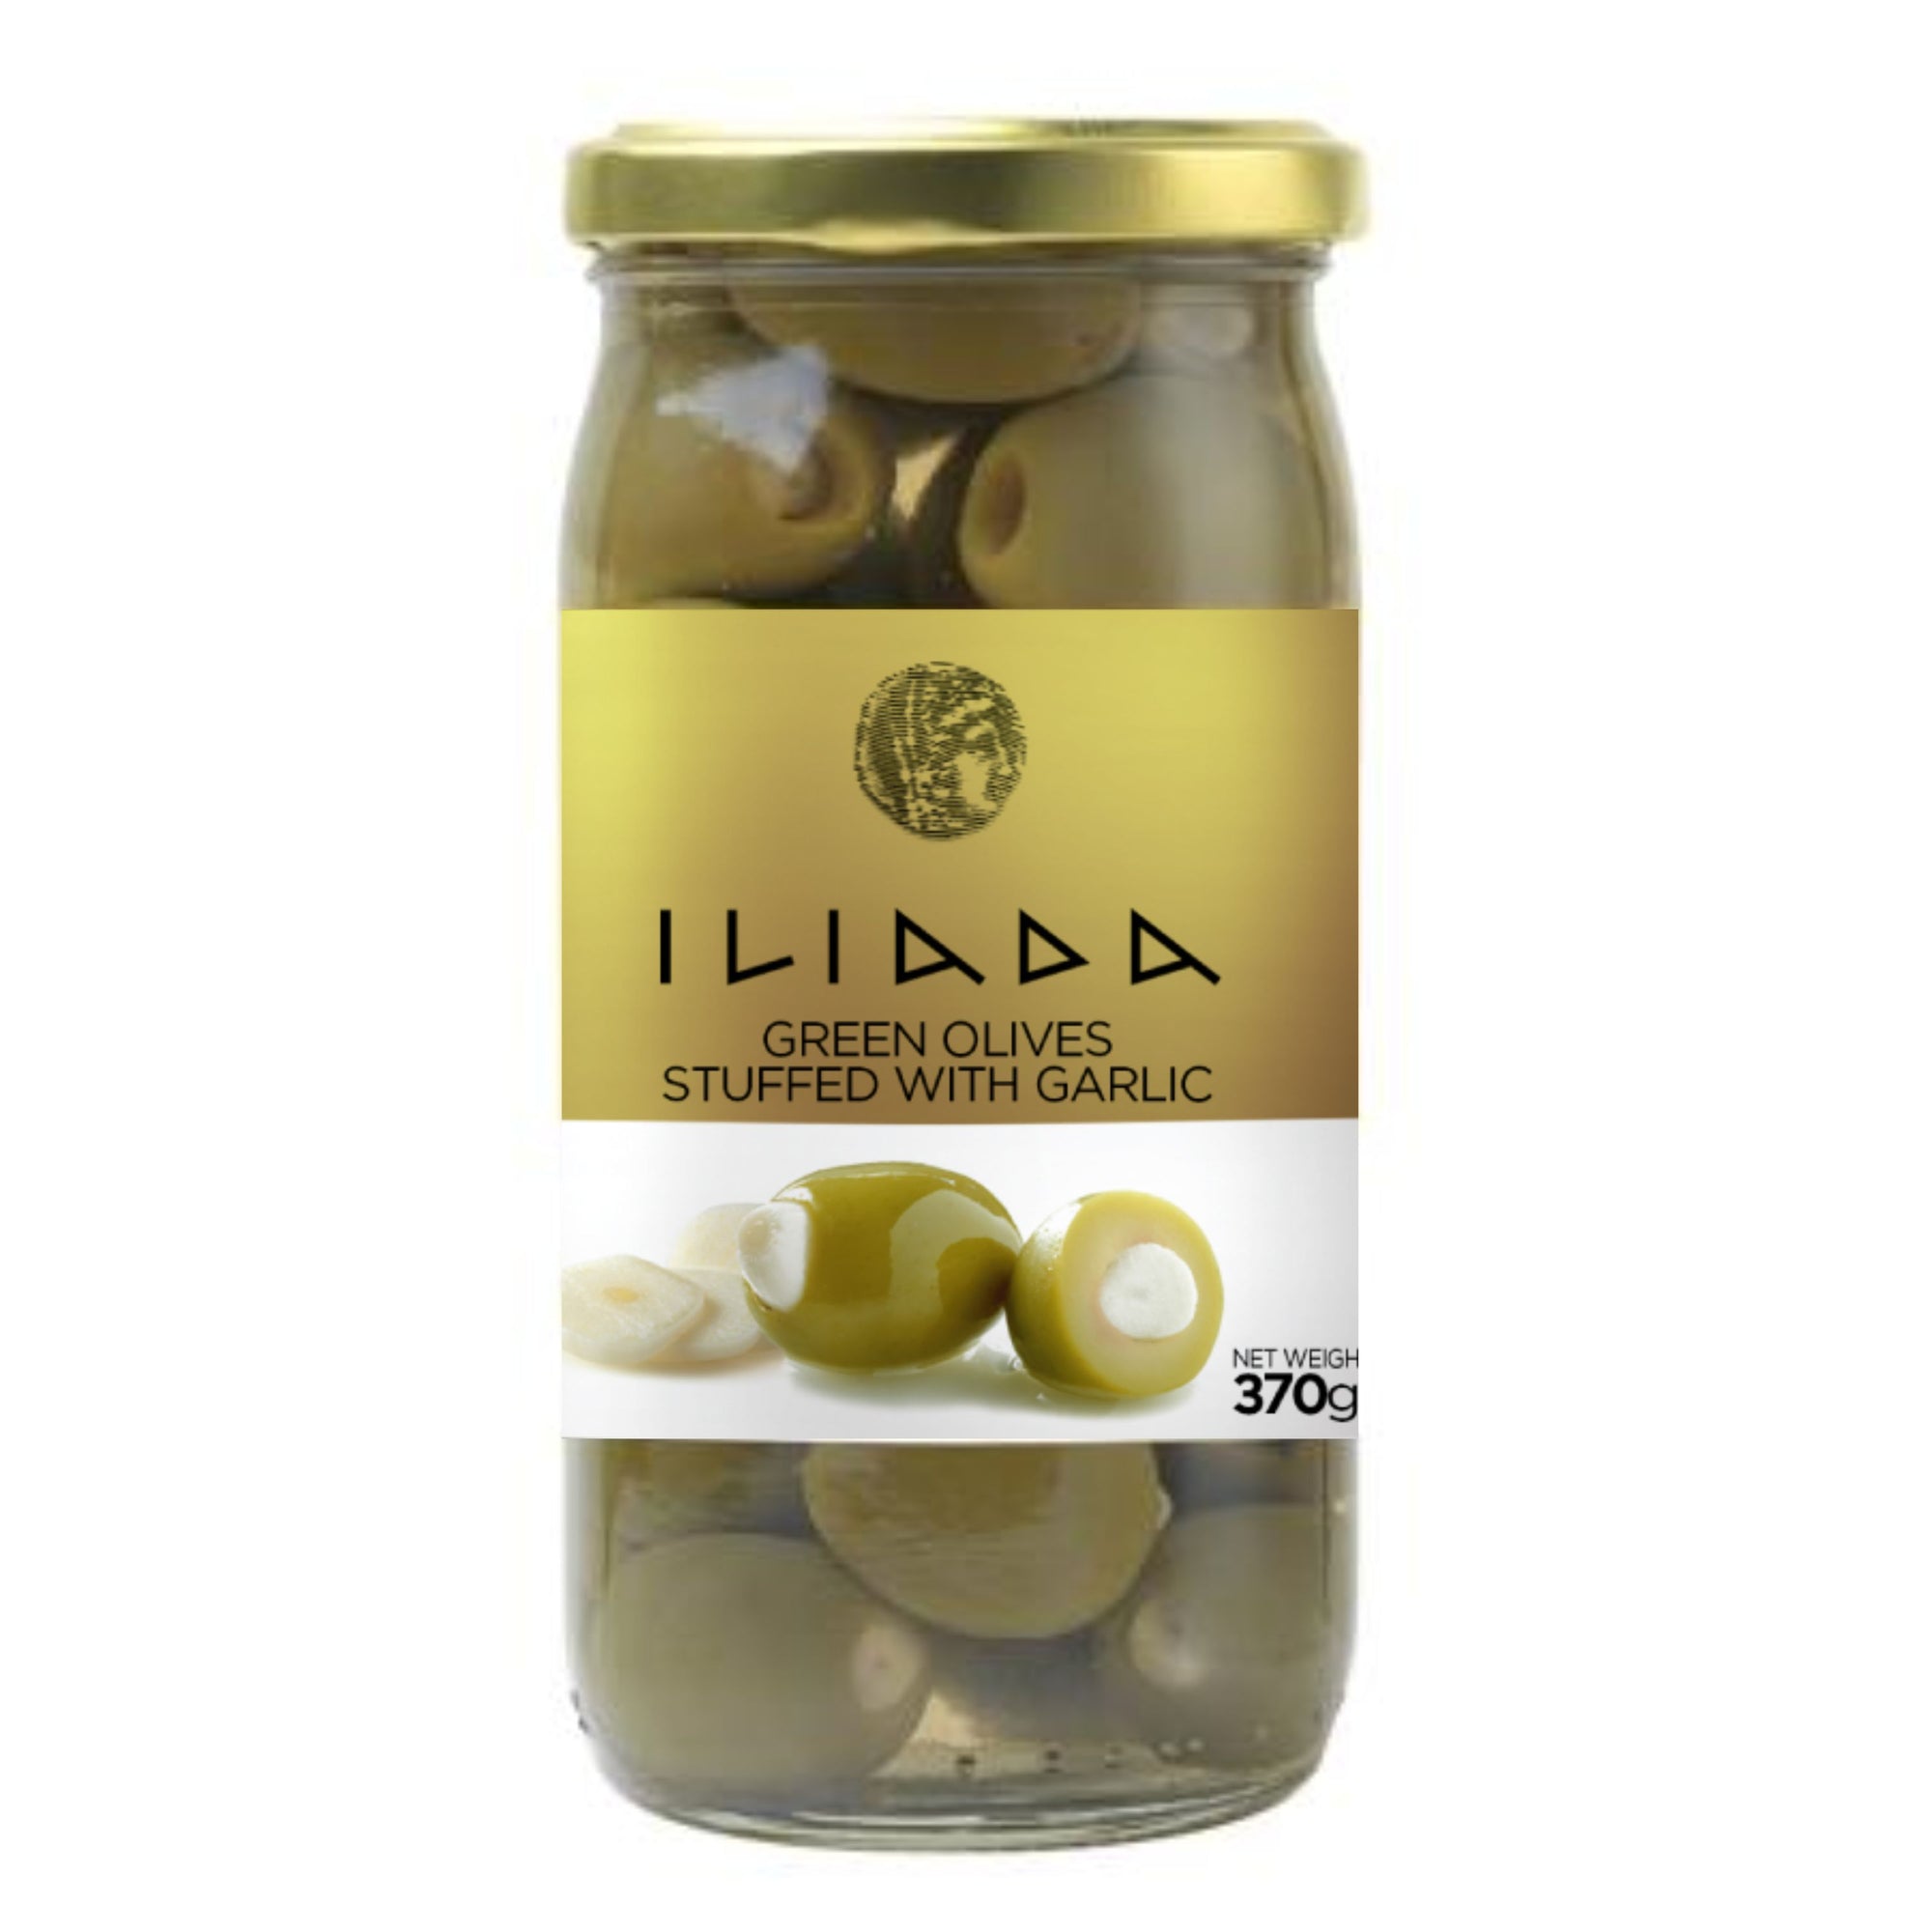 Green Olives stuffed w/ Garlic 'Iliada' 370g - Gold Line